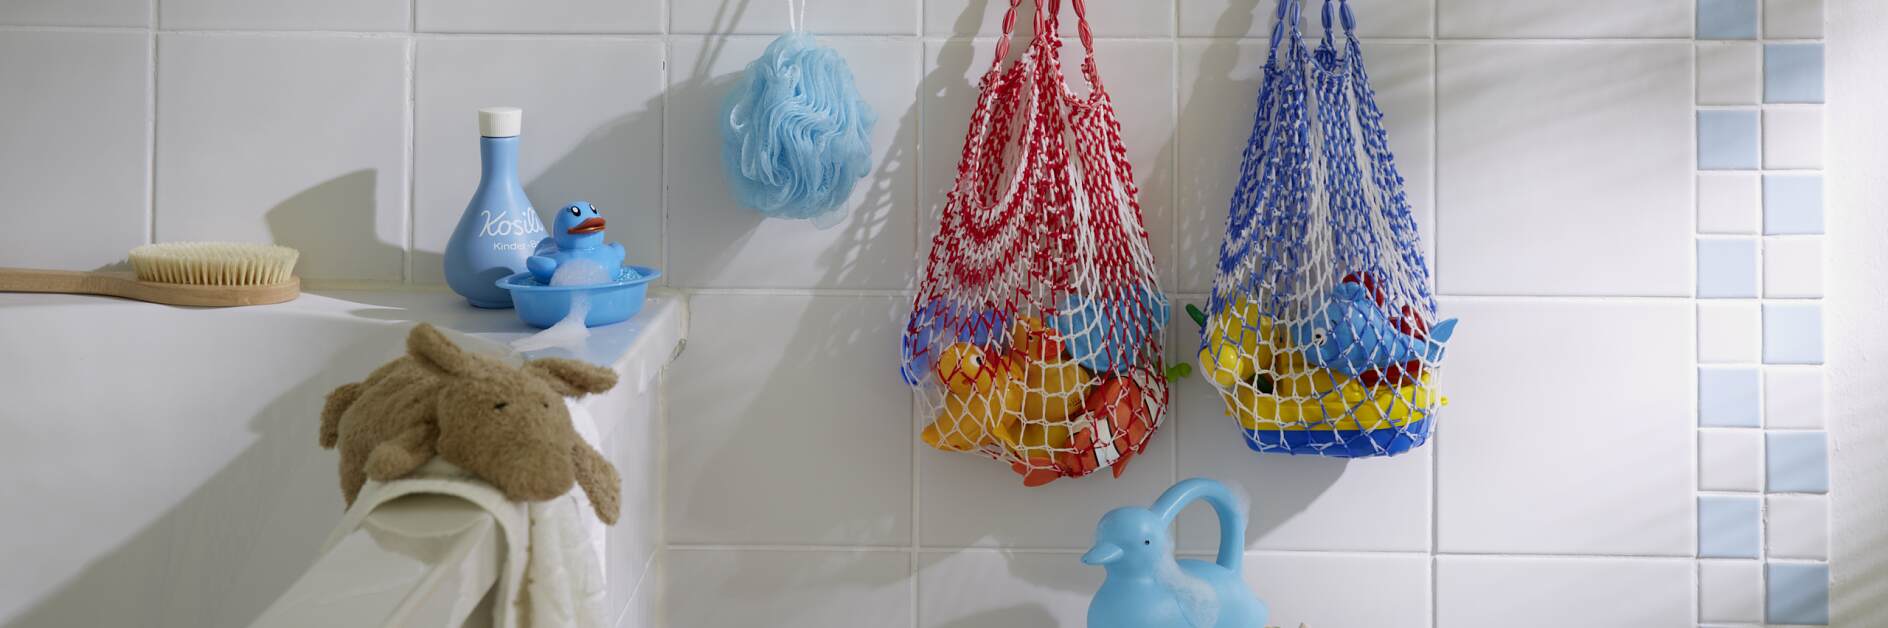 Toy Net Organization Idea for Bath